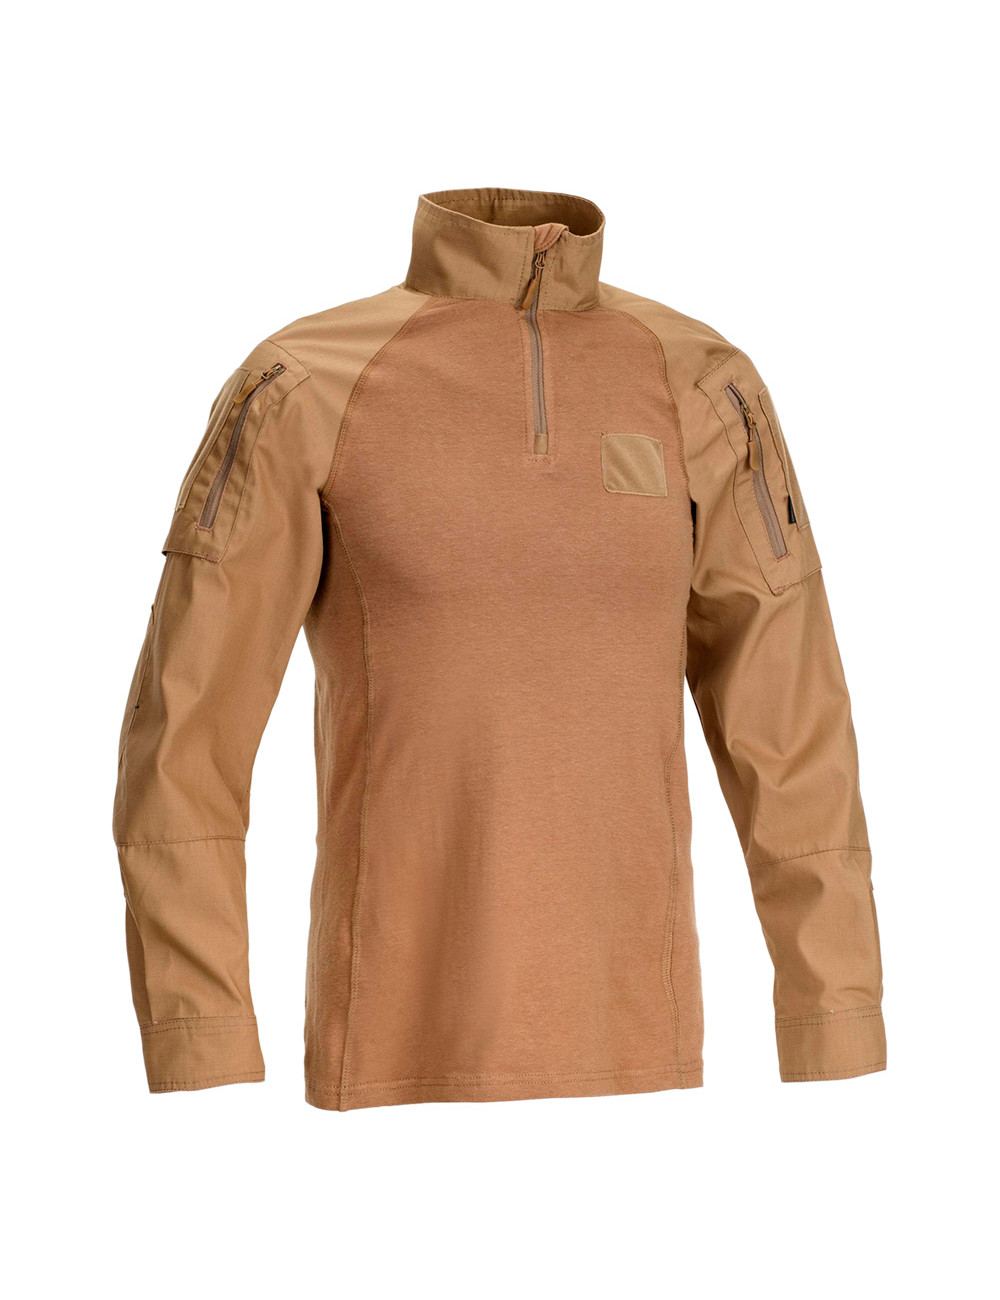 DEFCON 5 D5-3267 CT Tiger Combat Shirt COYOTE TAN L